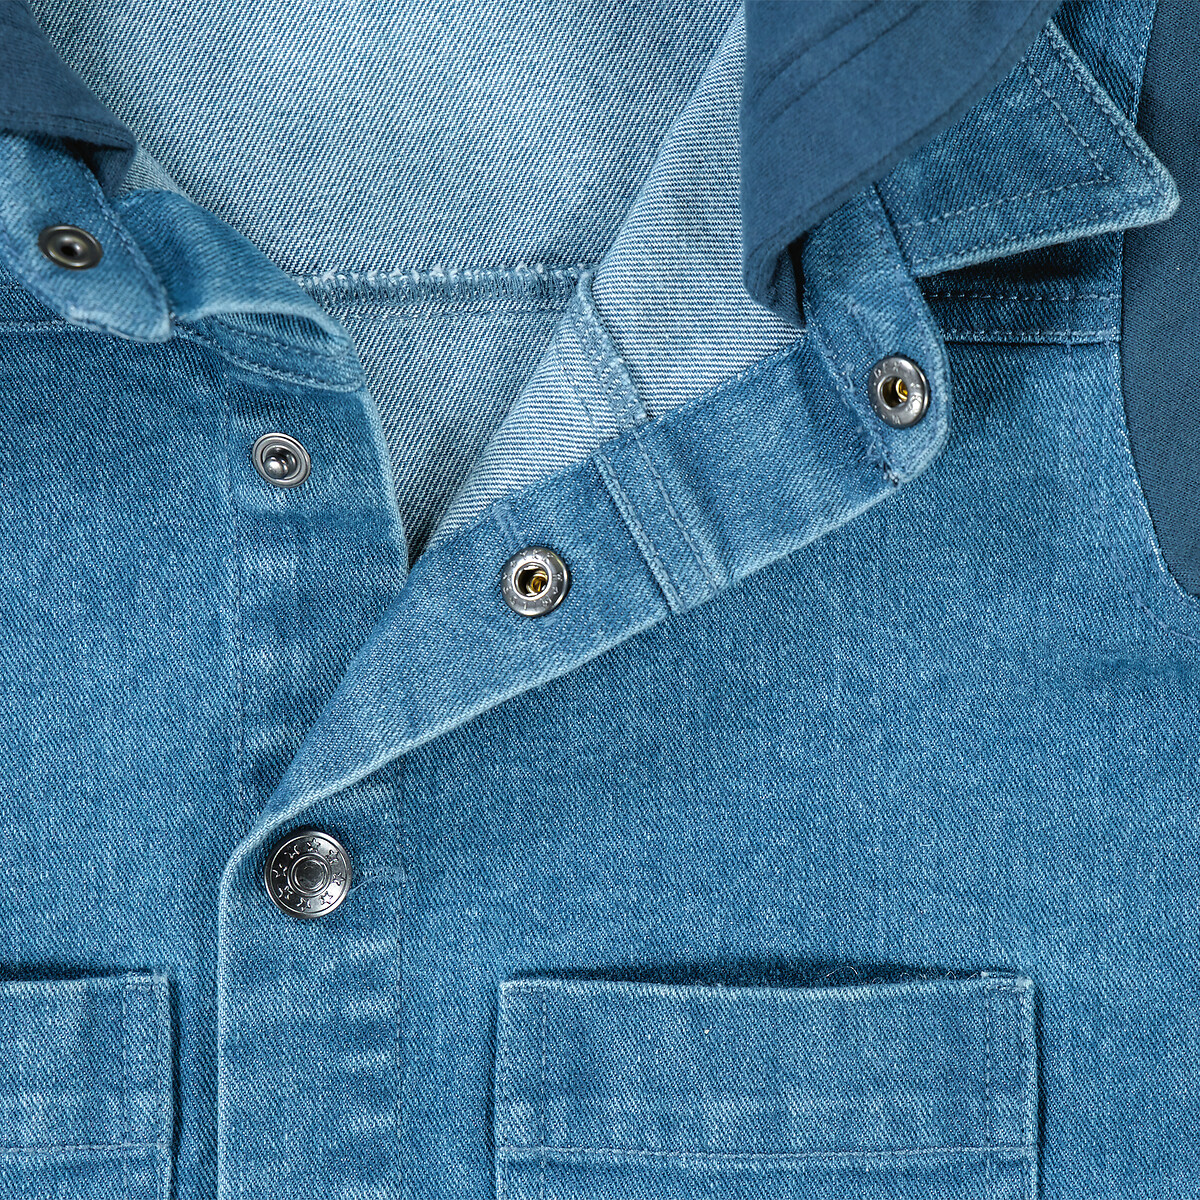 Куртка Из джинсовой ткани и мольтона с капюшоном 1 год - 74 см синий LaRedoute, размер 1 год - 74 см - фото 5